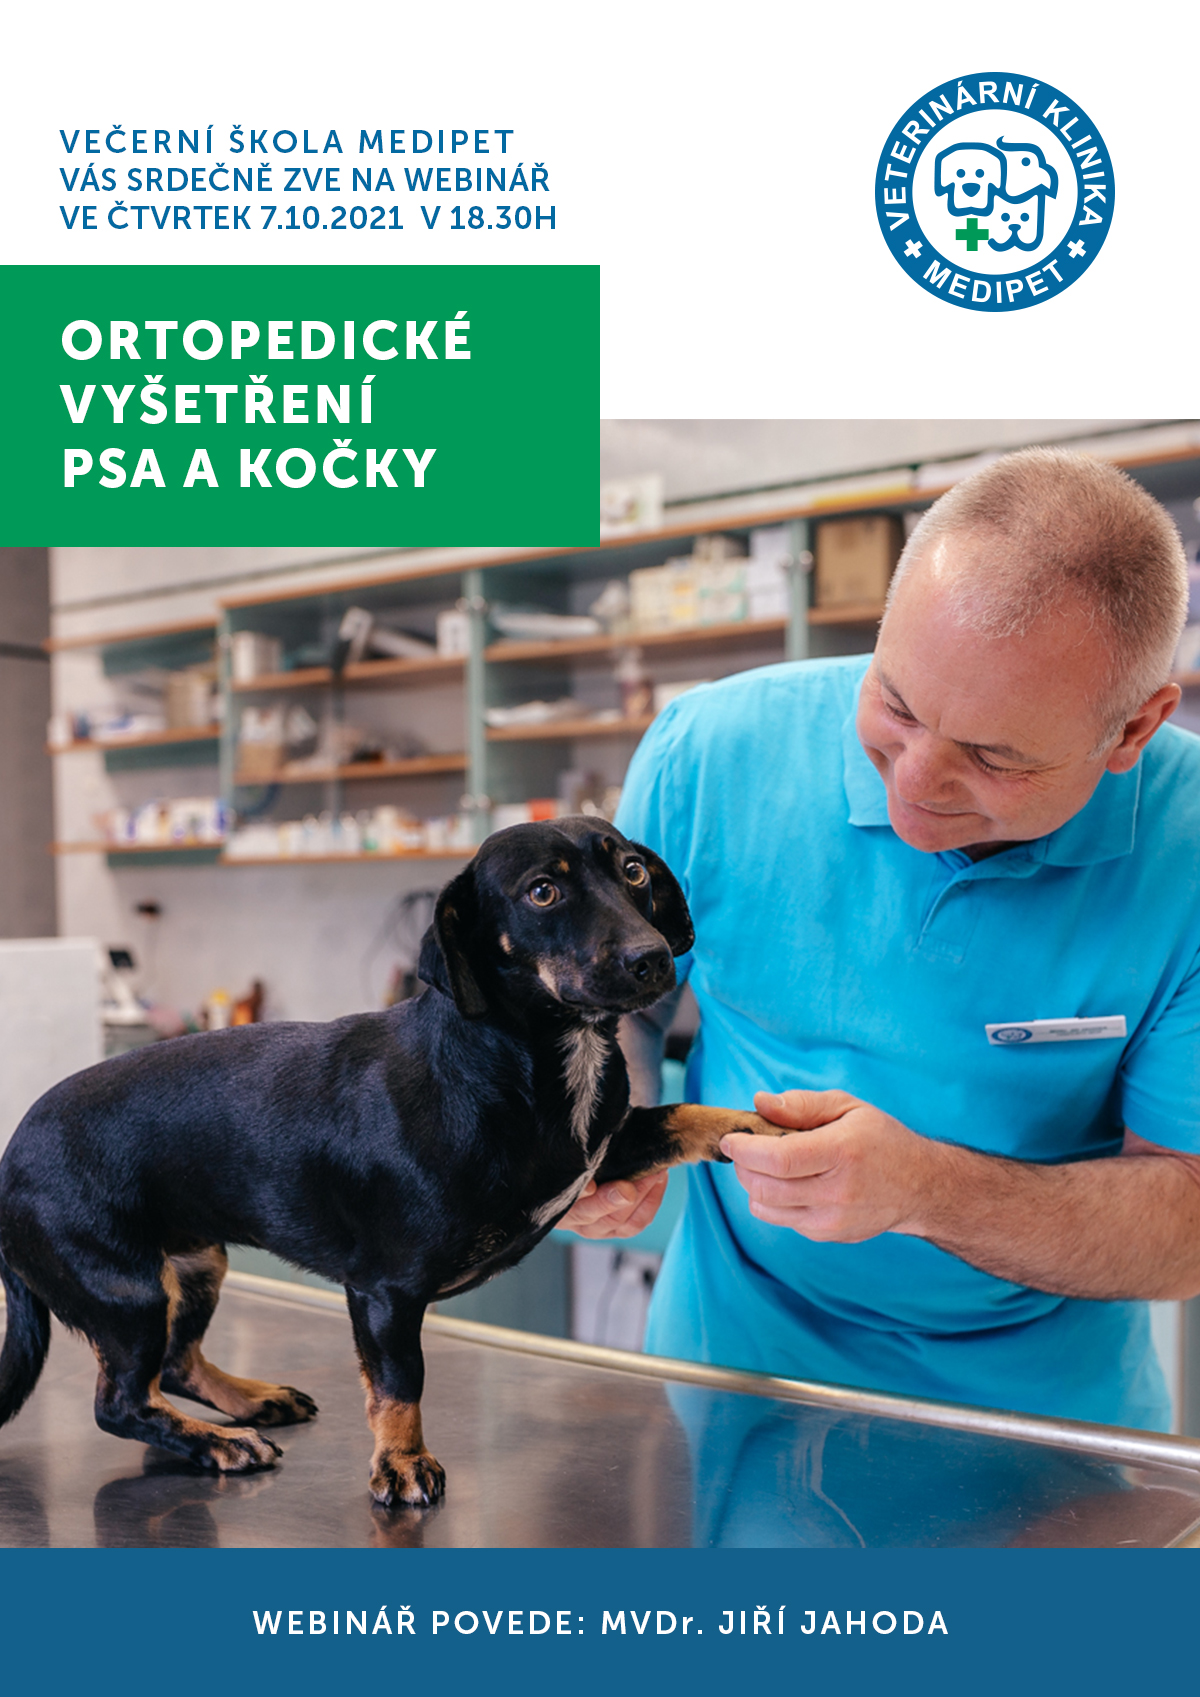 Ortopedické vyšetření psa a kočky